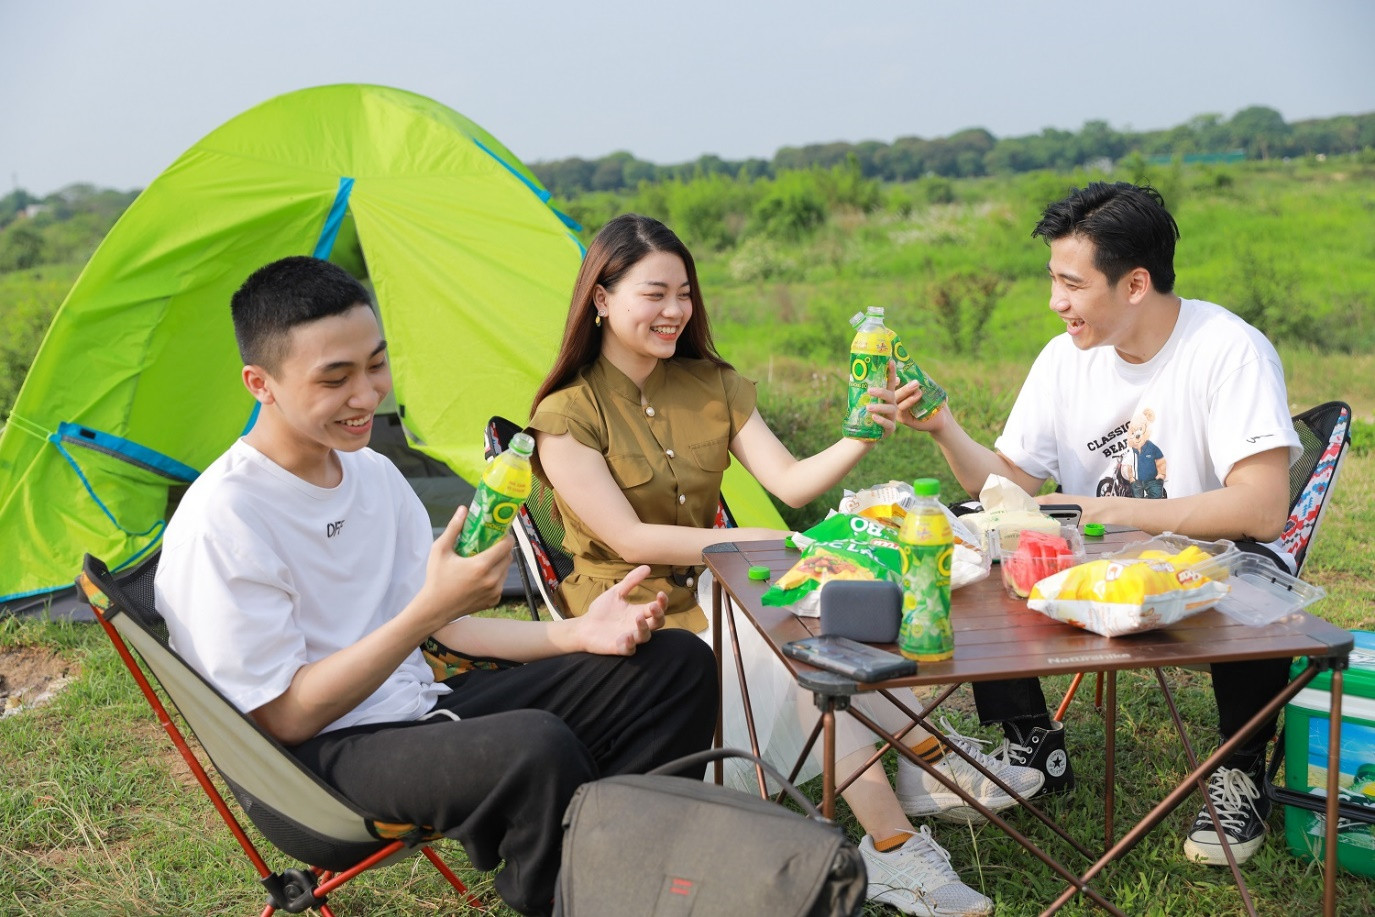 Người tiêu dùng háo hức giải khát với các sản phẩm như Trà Dr Thanh, Trà Xanh Không Độ, Nước tăng lực Number 1 để có cơ hội dễ dàng trúng các giải thưởng giá trị.